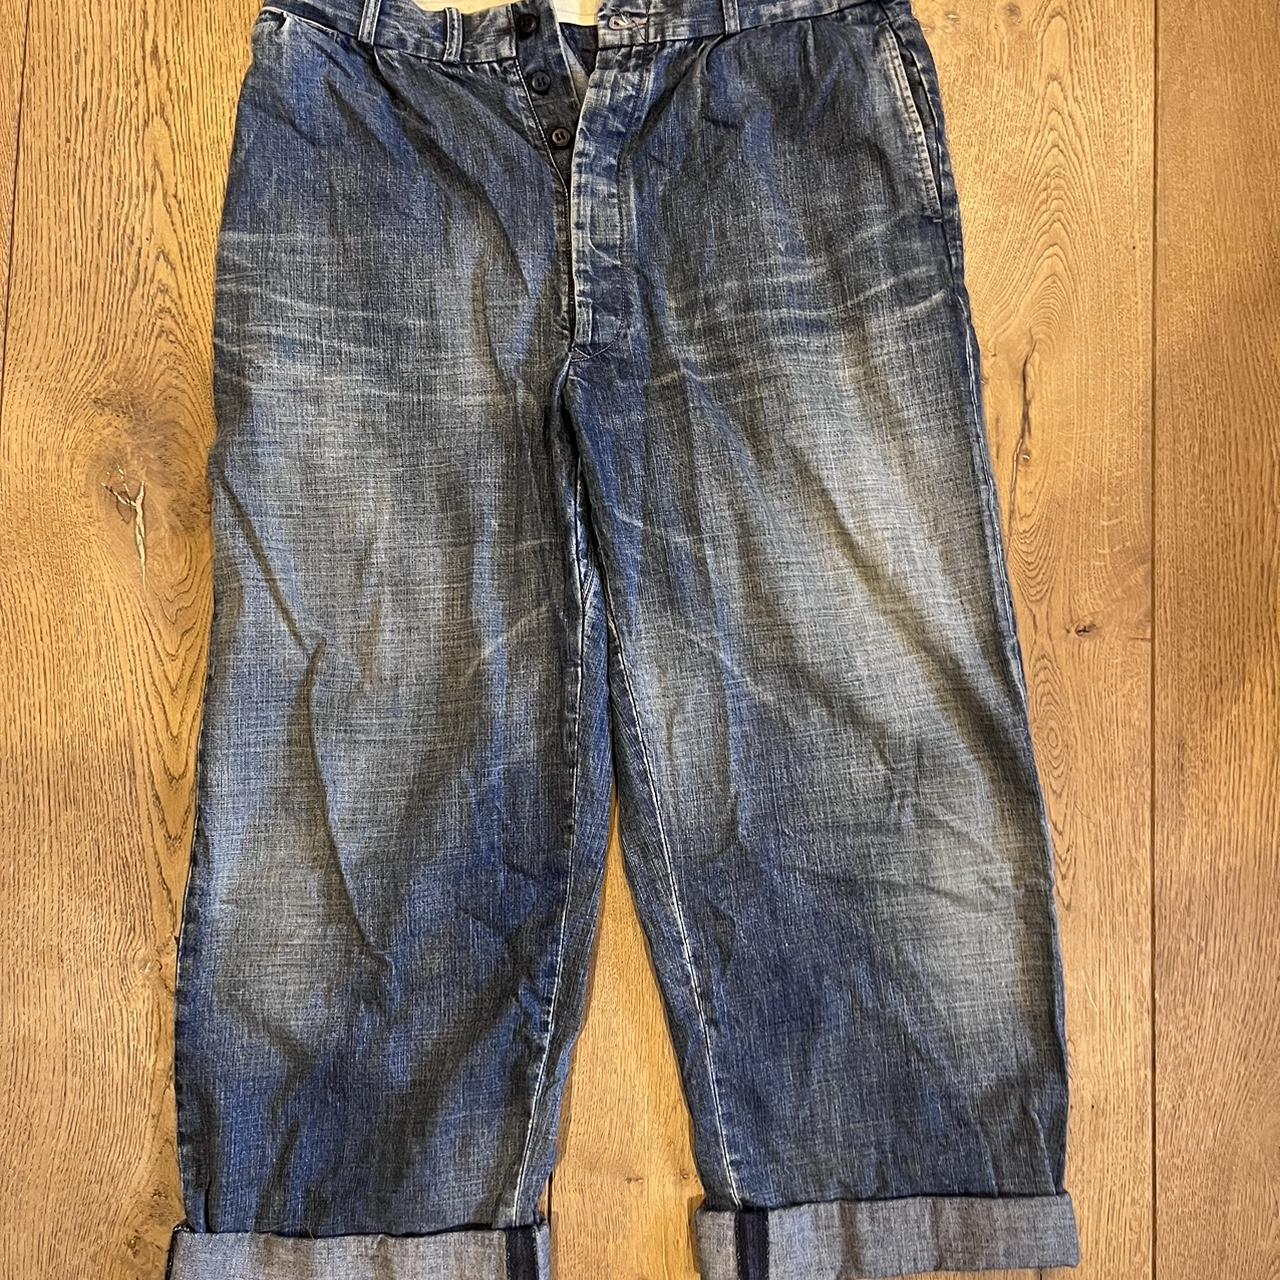 Belafonte Ragtime Jeans, Japanese lightweight denim... - Depop